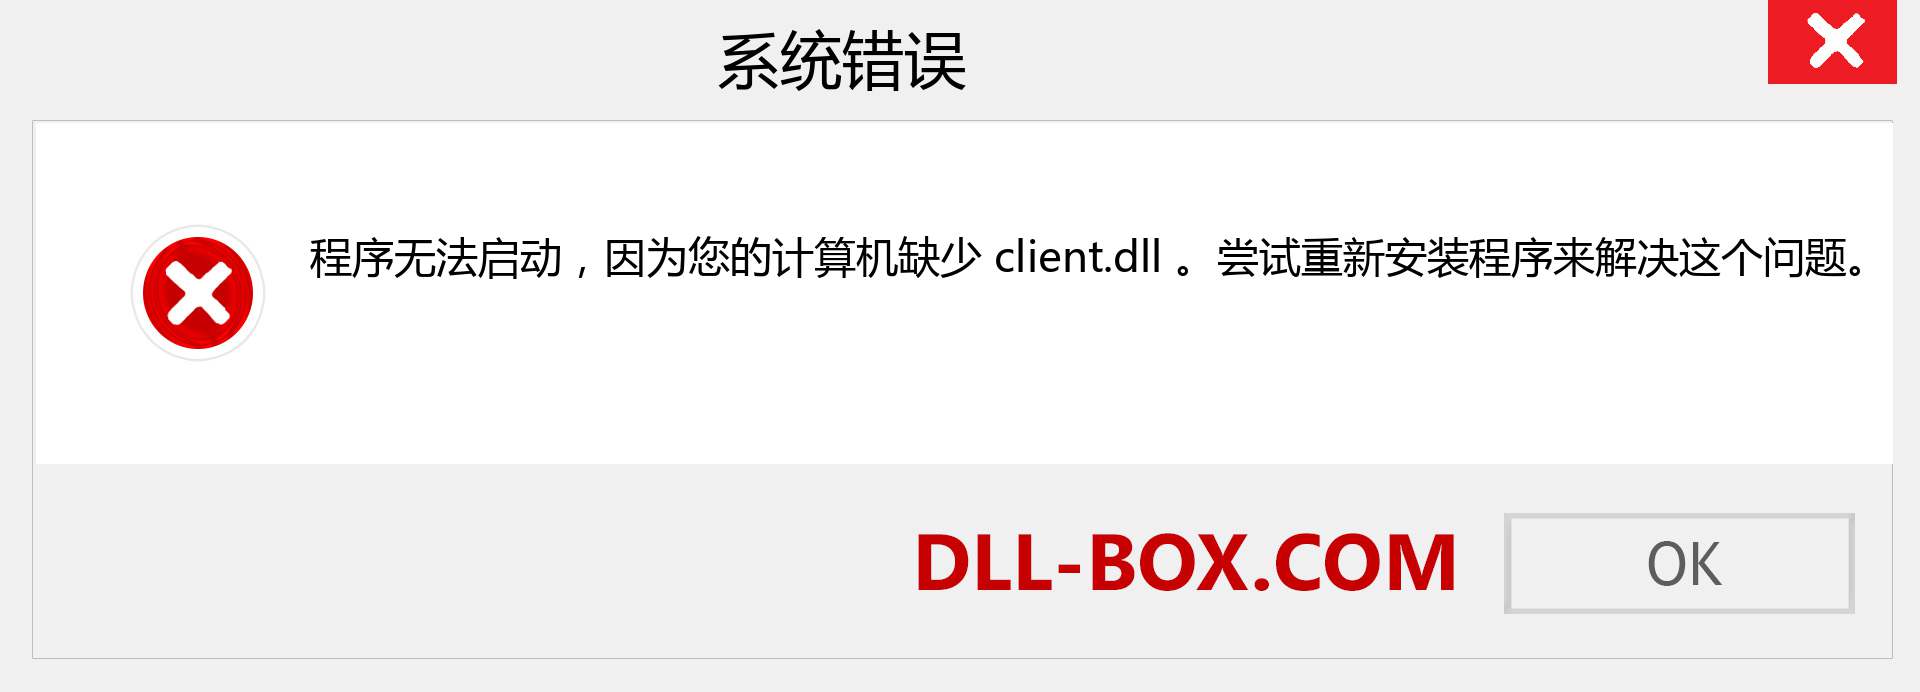 client.dll 文件丢失？。 适用于 Windows 7、8、10 的下载 - 修复 Windows、照片、图像上的 client dll 丢失错误